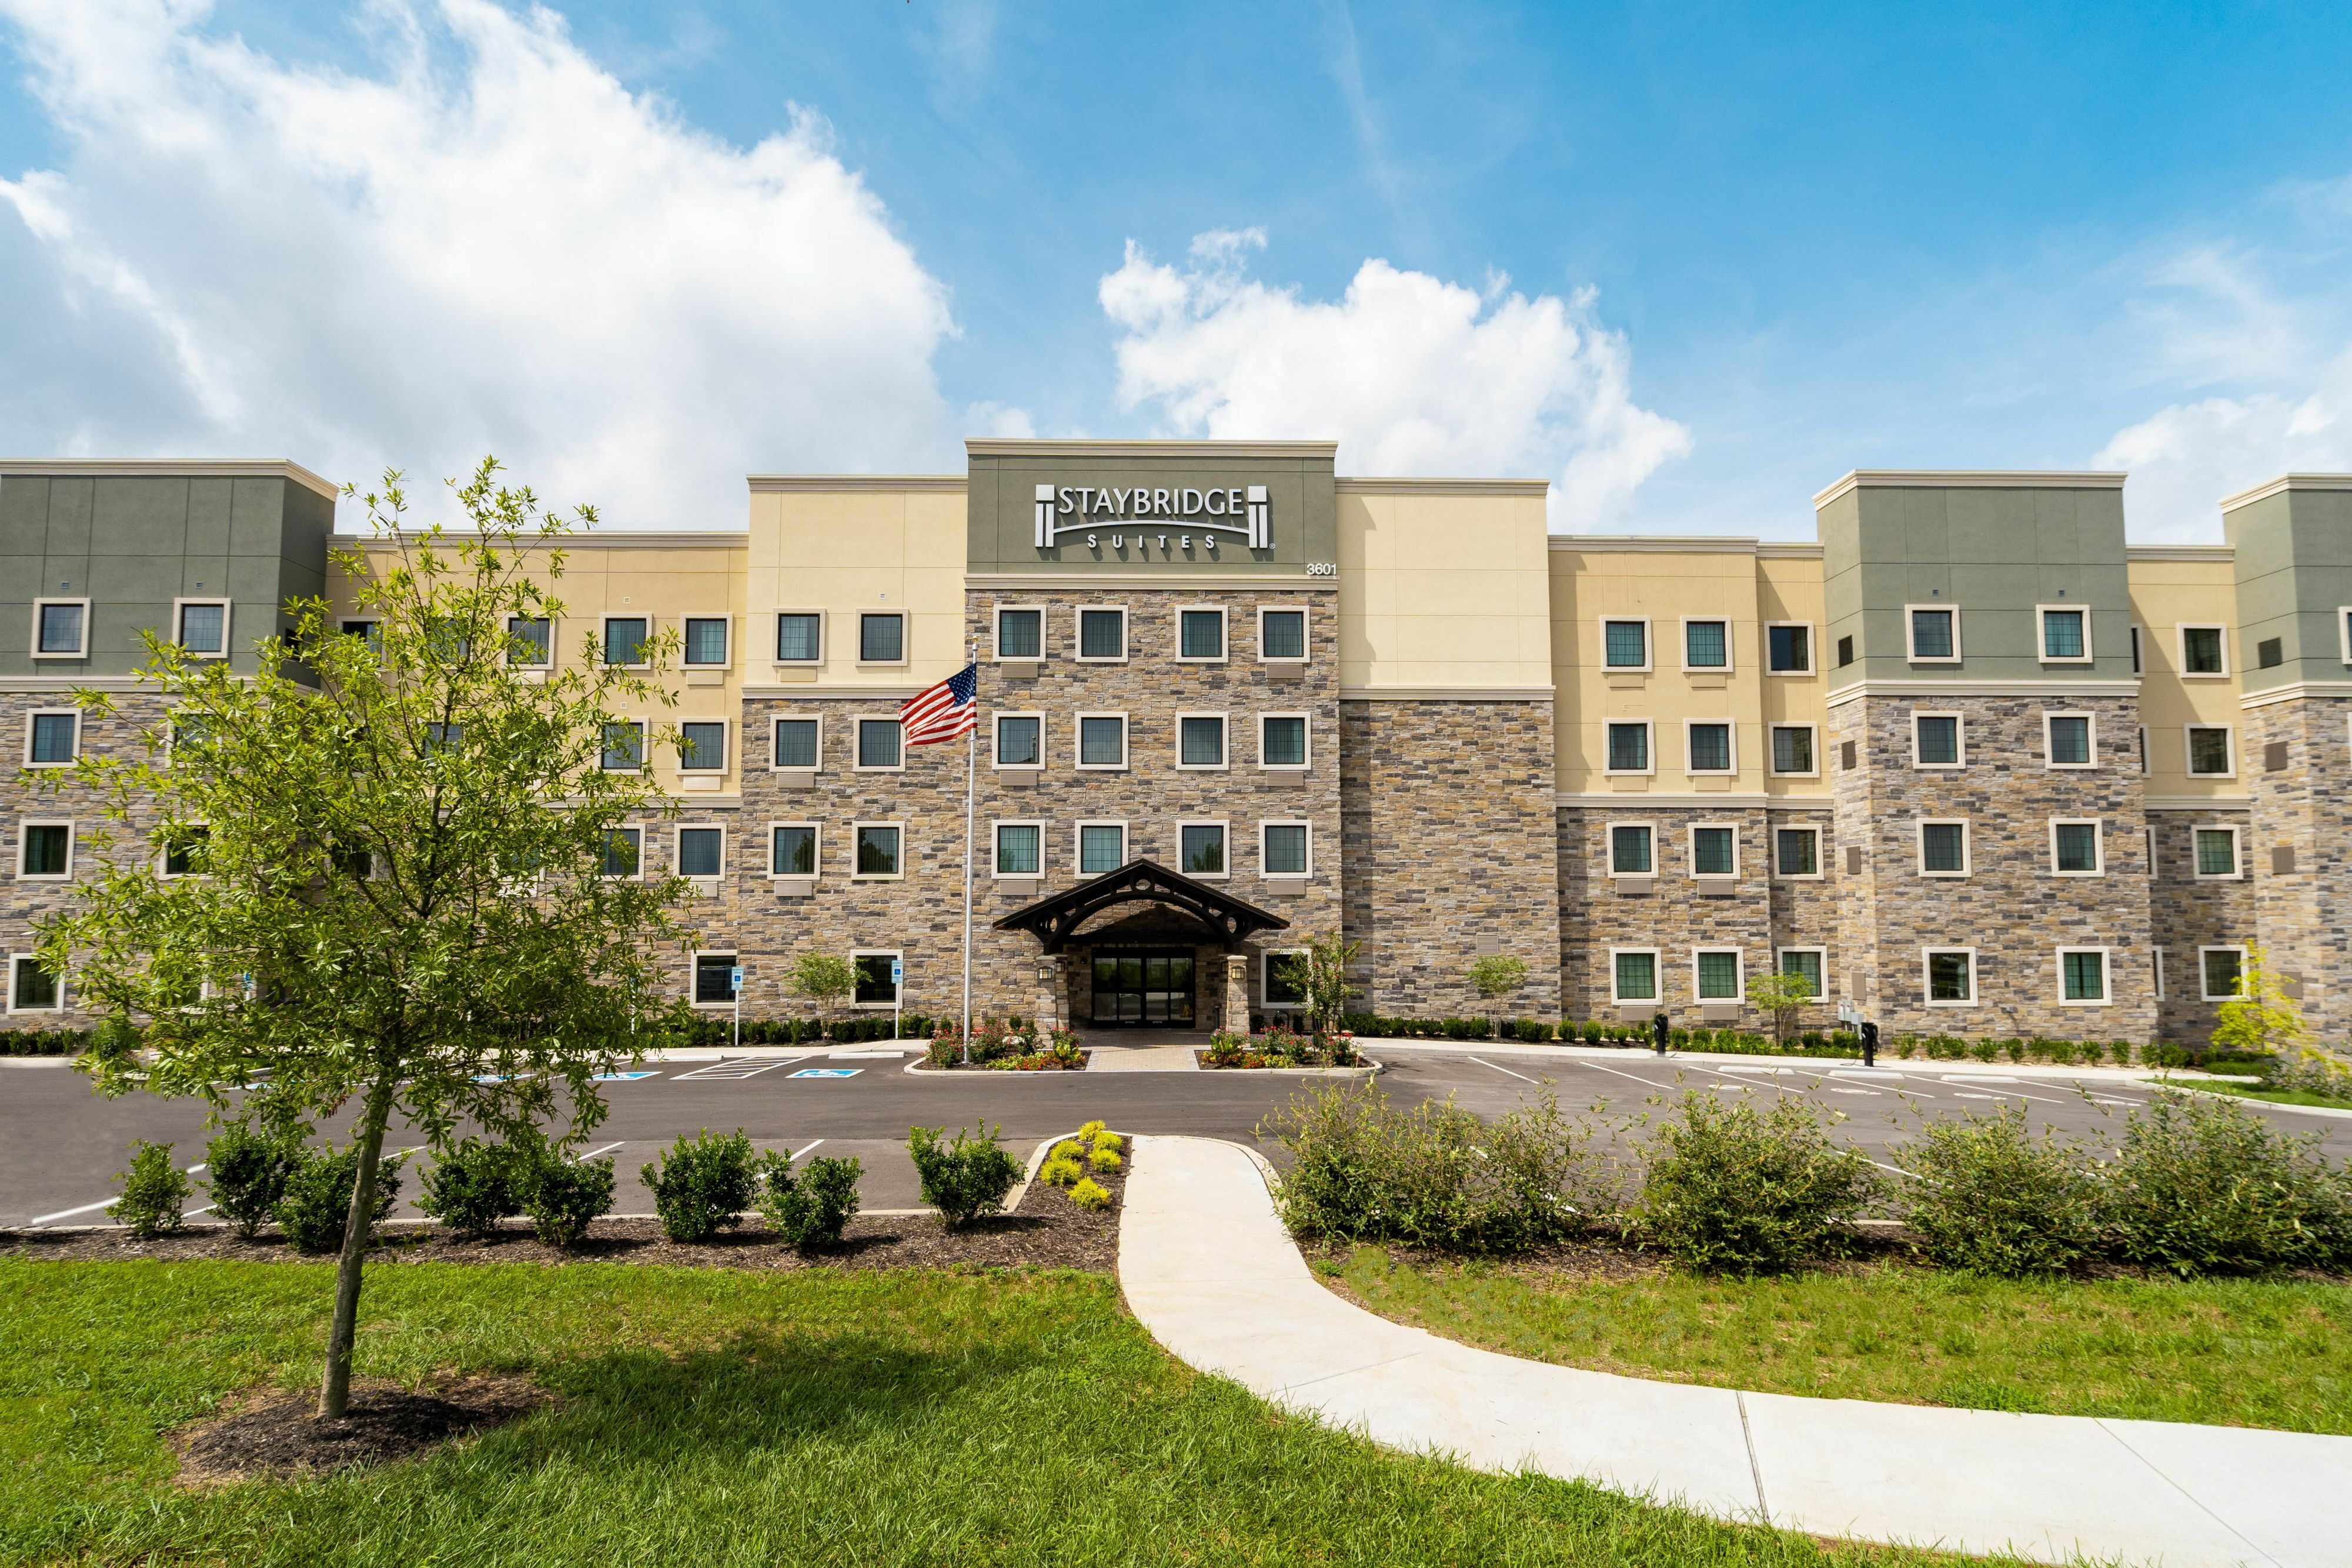 Photo of Staybridge Suites Nashville - Franklin, Franklin, TN